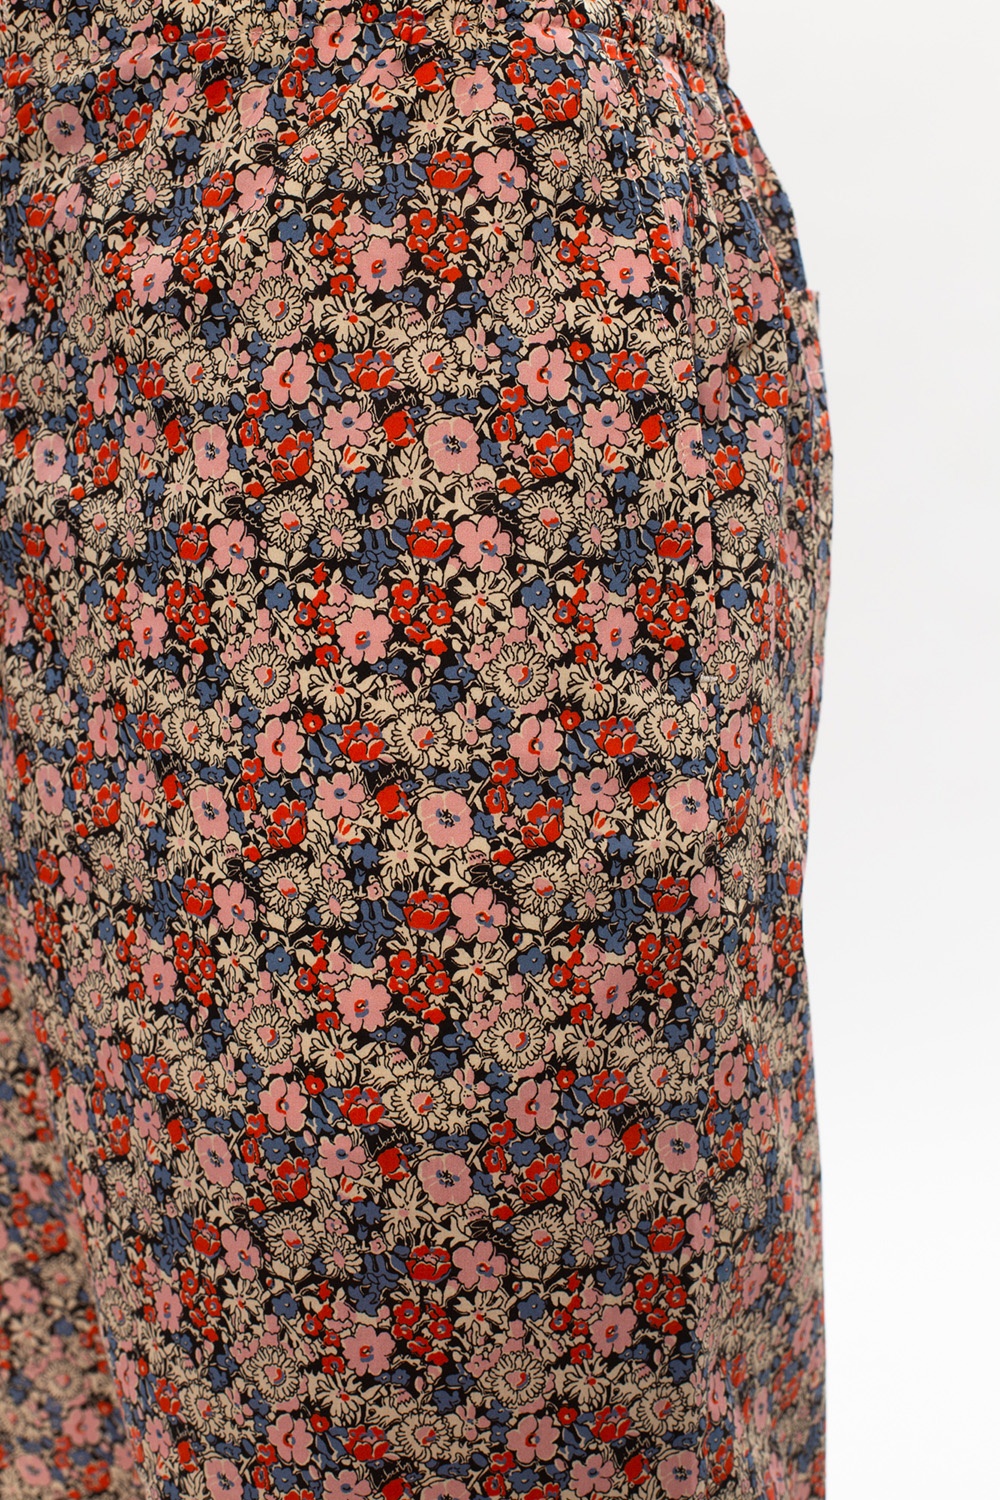 Gucci Floral-printed shorts